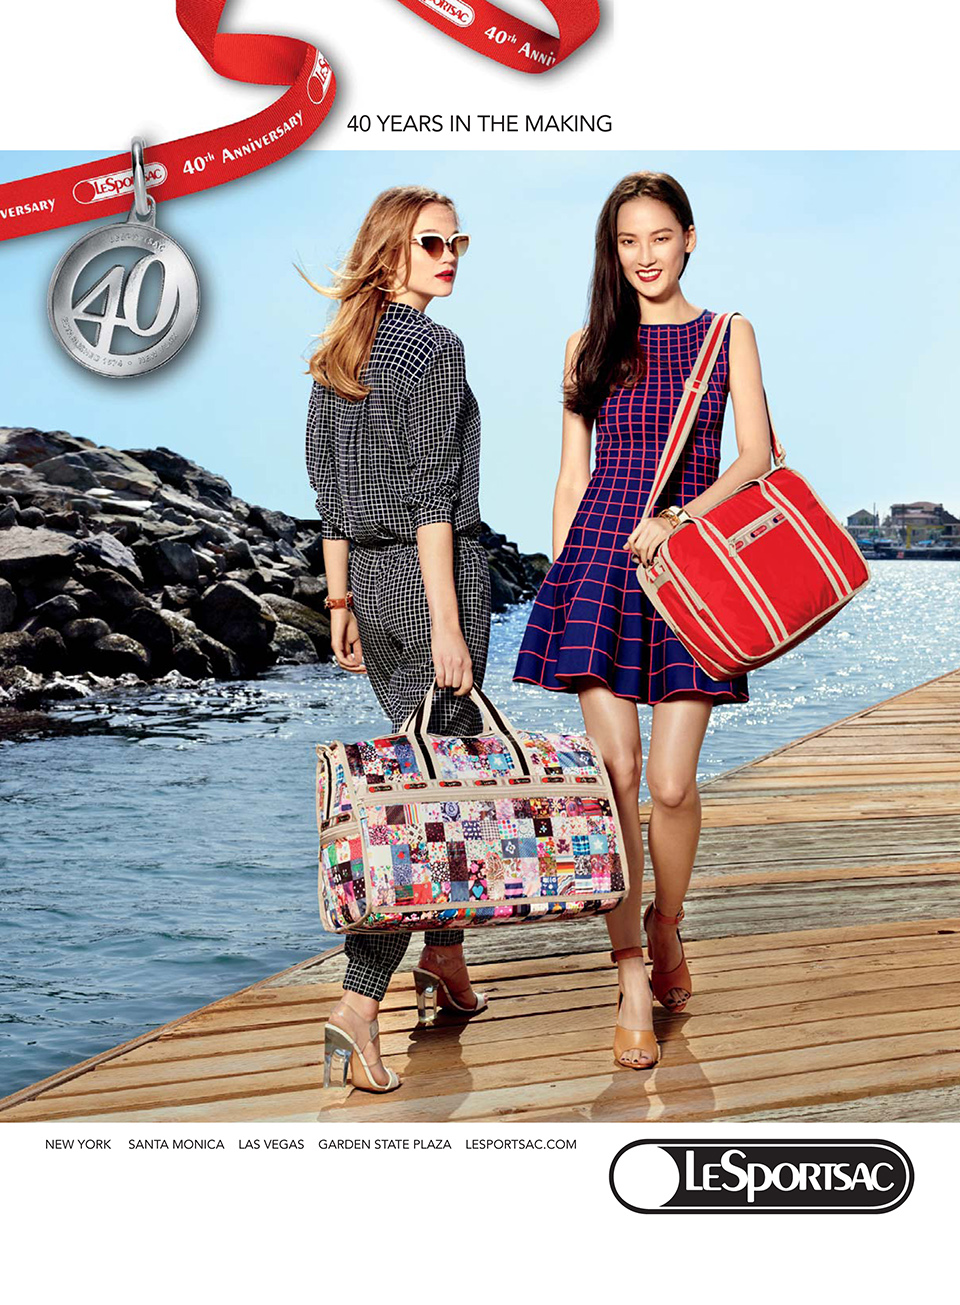 2014 광고캠페인 이미지. 헤박과 외국 모델이 레스포삭 가방을 메고 있다.